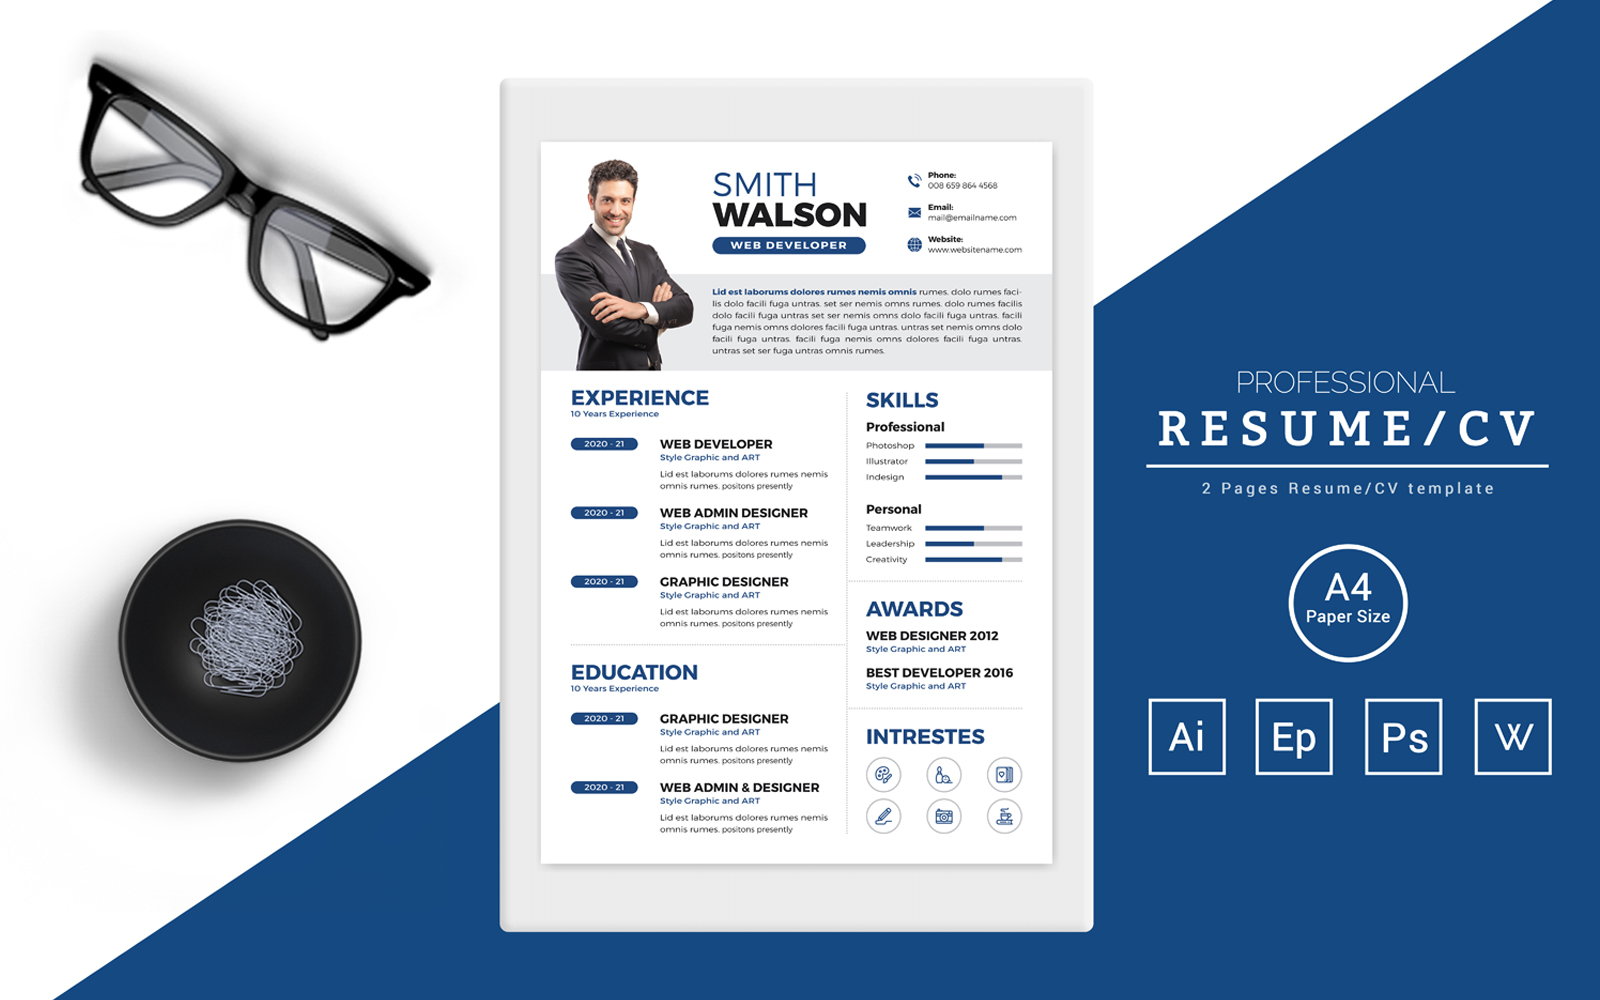 Smith Walson – CV Design for a Web Developer Printable Resume Templates